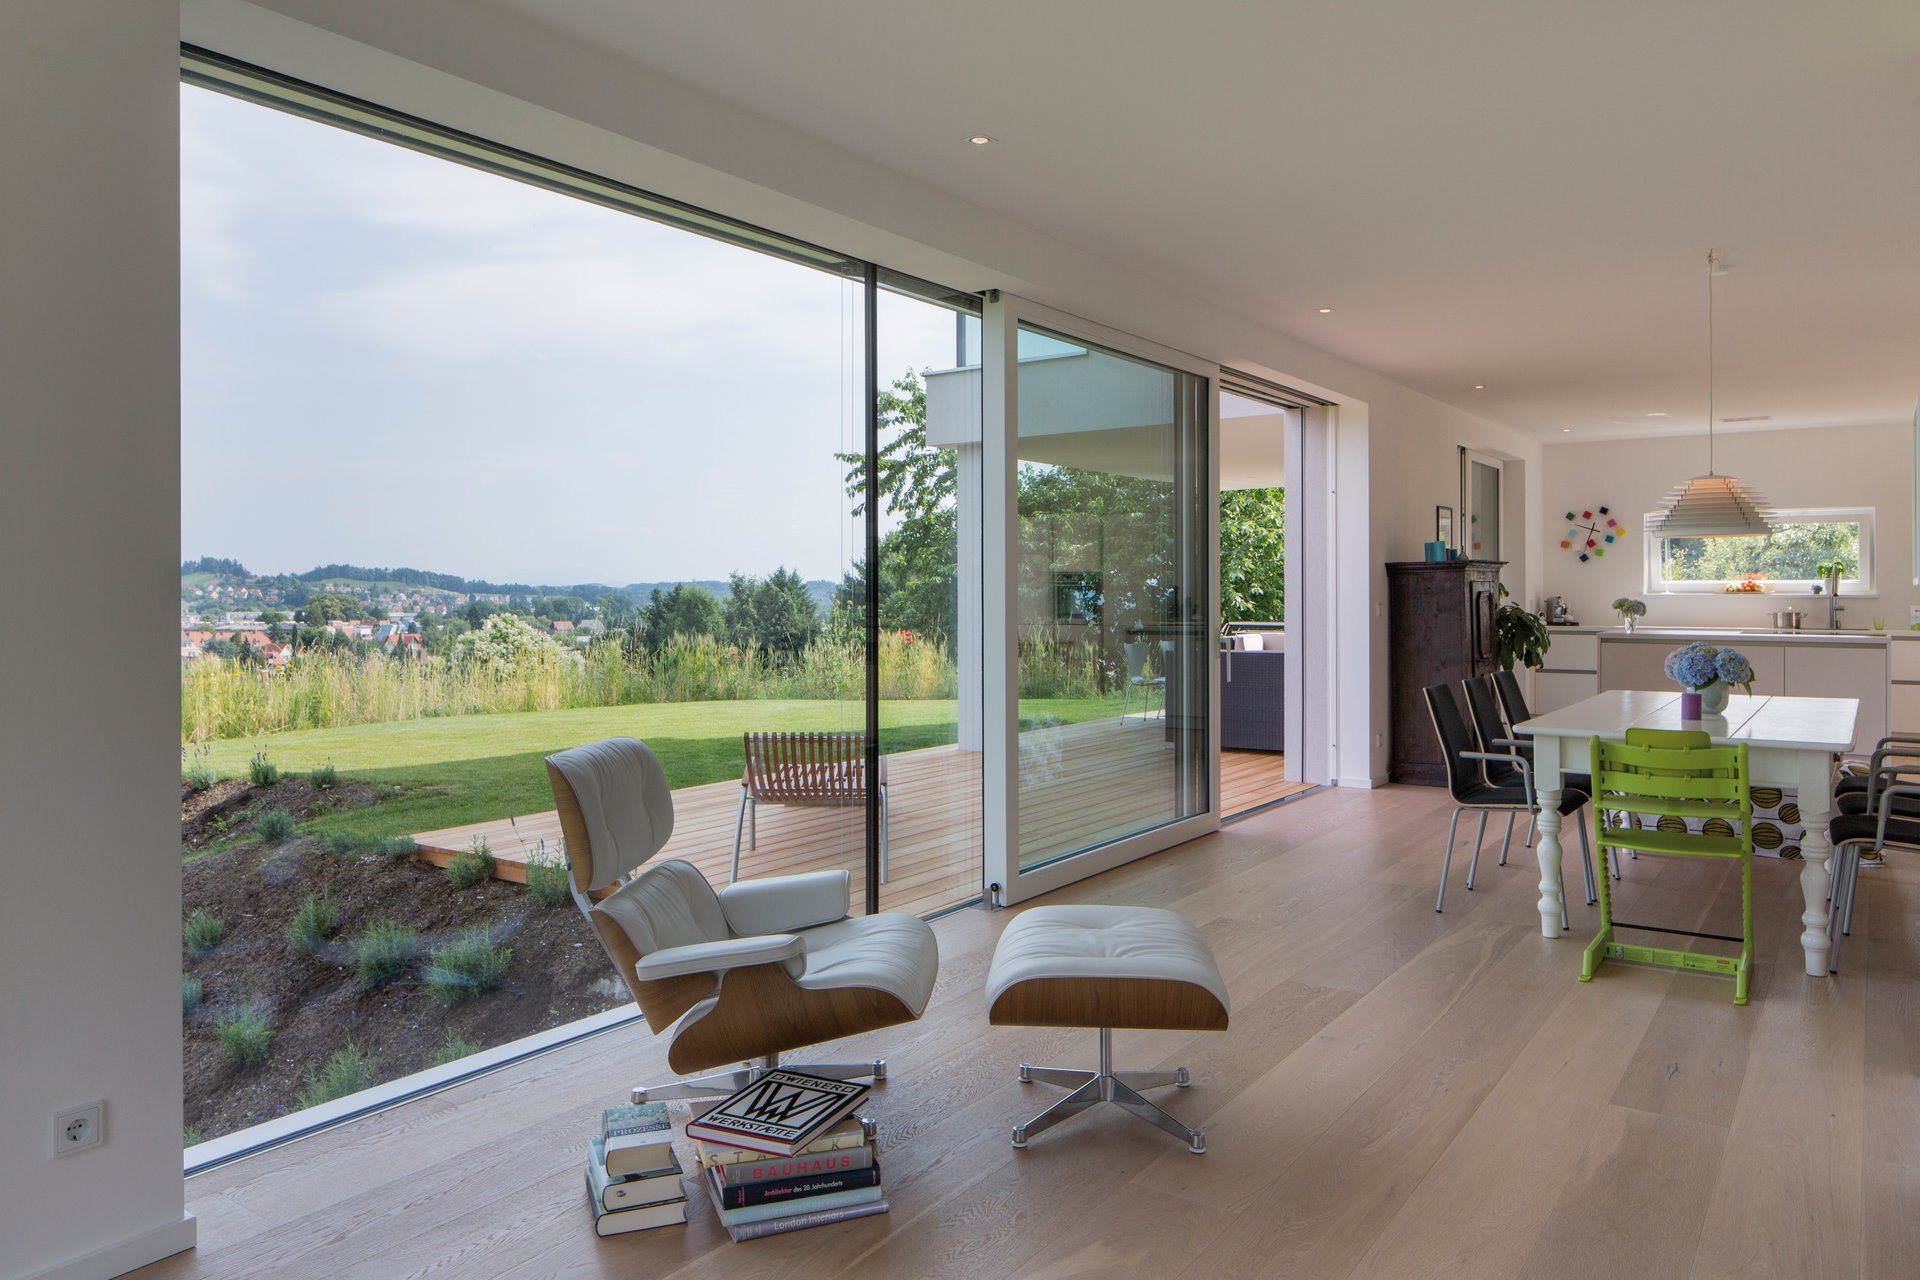 Gaulhofer Ganzglassysteme erweitern Wohnräume visuell.